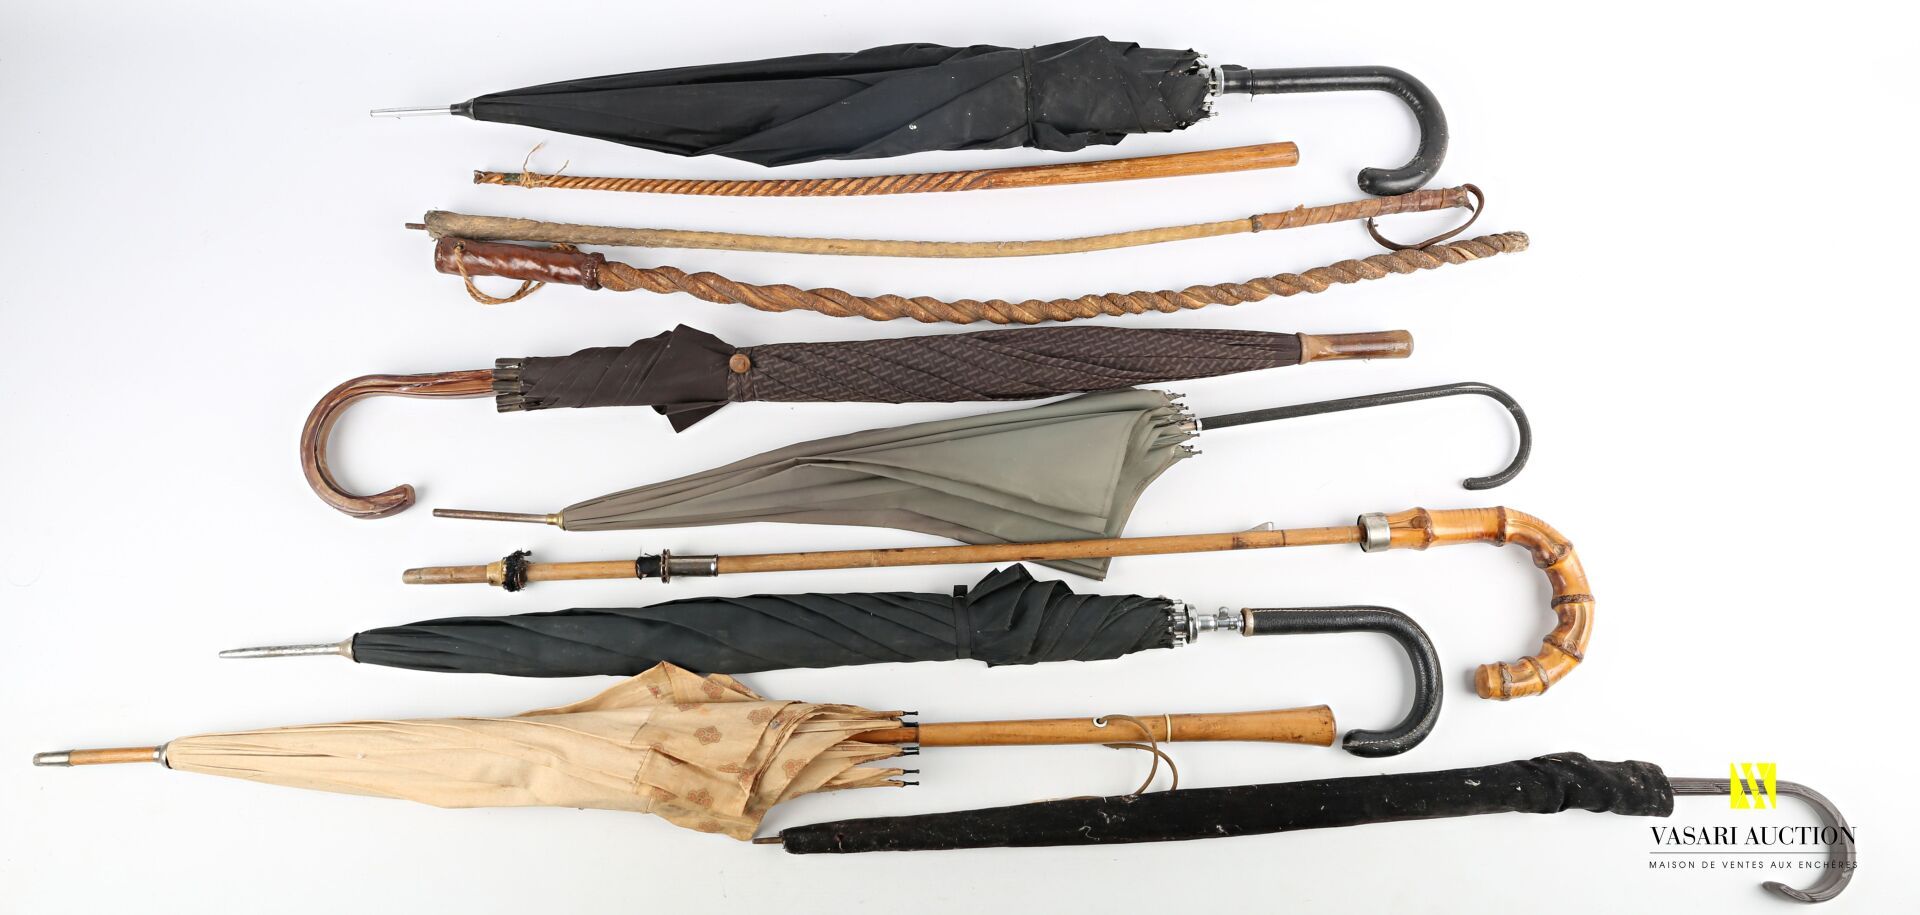 Null 拍品包括六把雨伞和三条鞭子。

(事故、遗失、不完整、按原样出售)